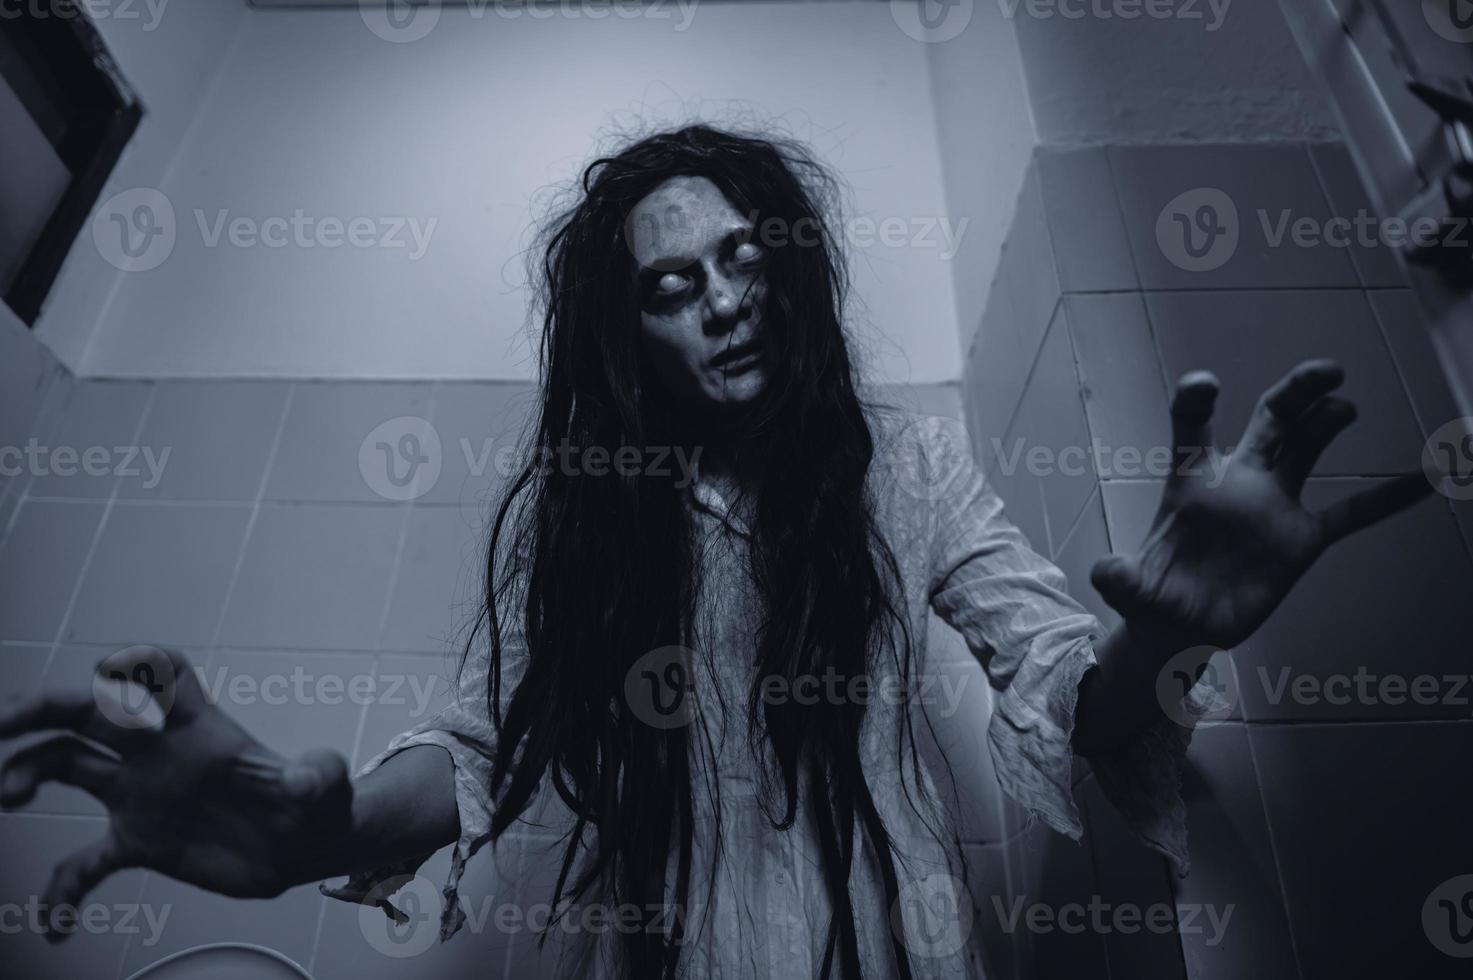 portret van Aziatische vrouw make-up geest, enge horrorscène voor achtergrond, halloween festival concept, spookfilms poster, boze geest in het appartement foto